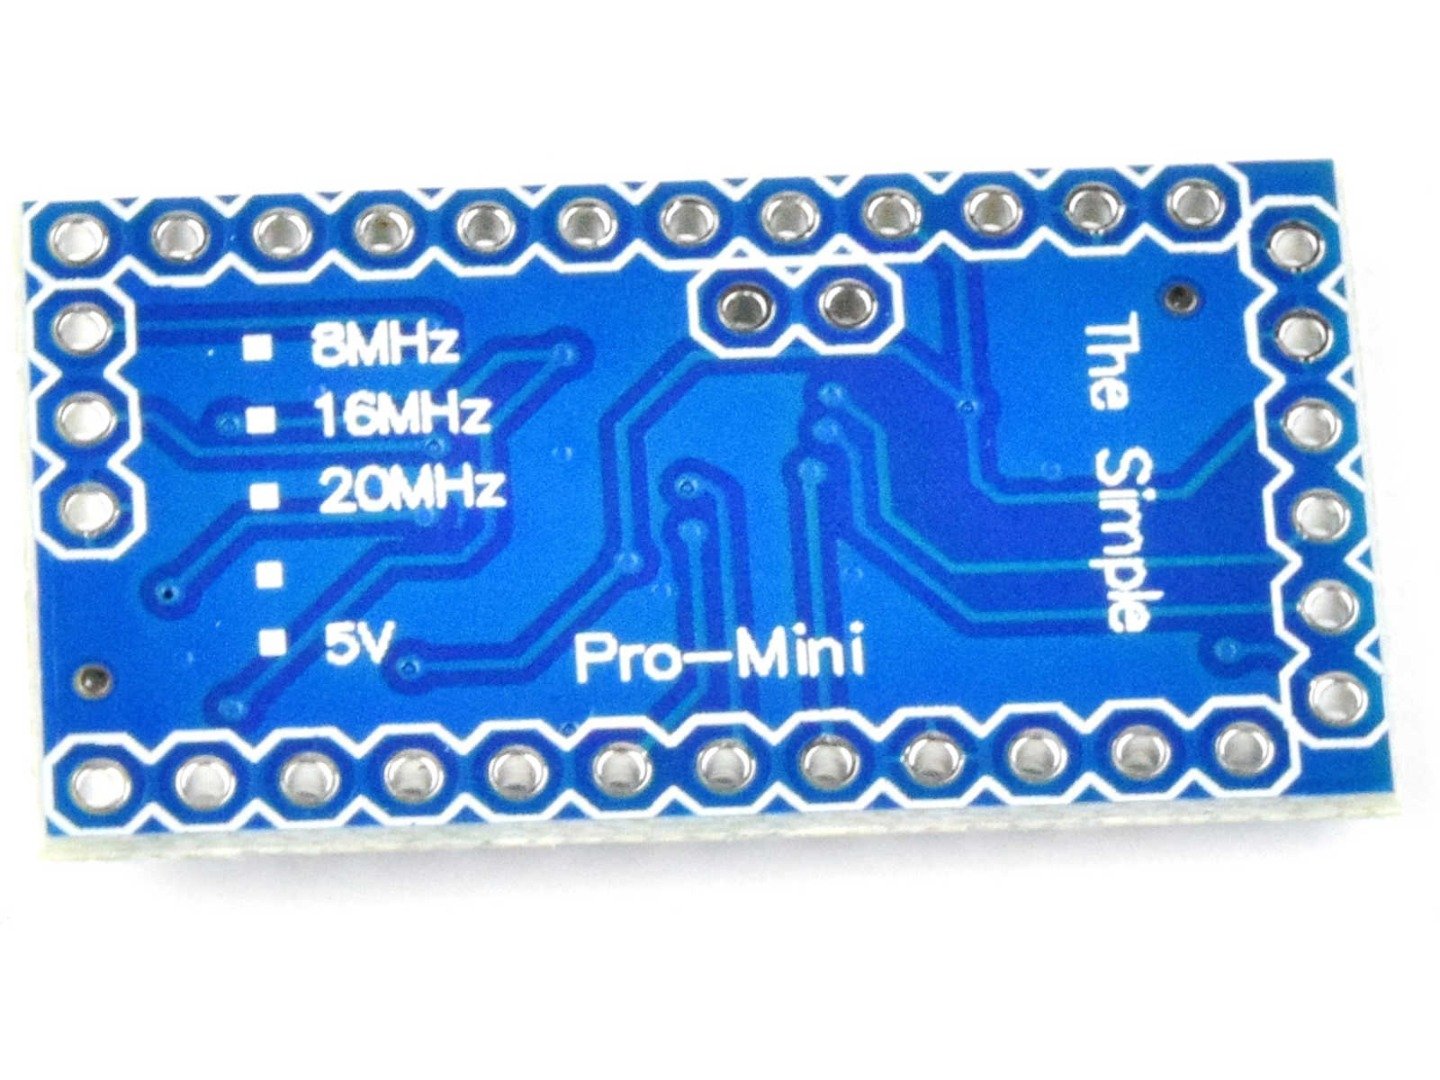 Pro Mini ATmega328P module 5V, 16MHz (100% compatible with Arduino) 11